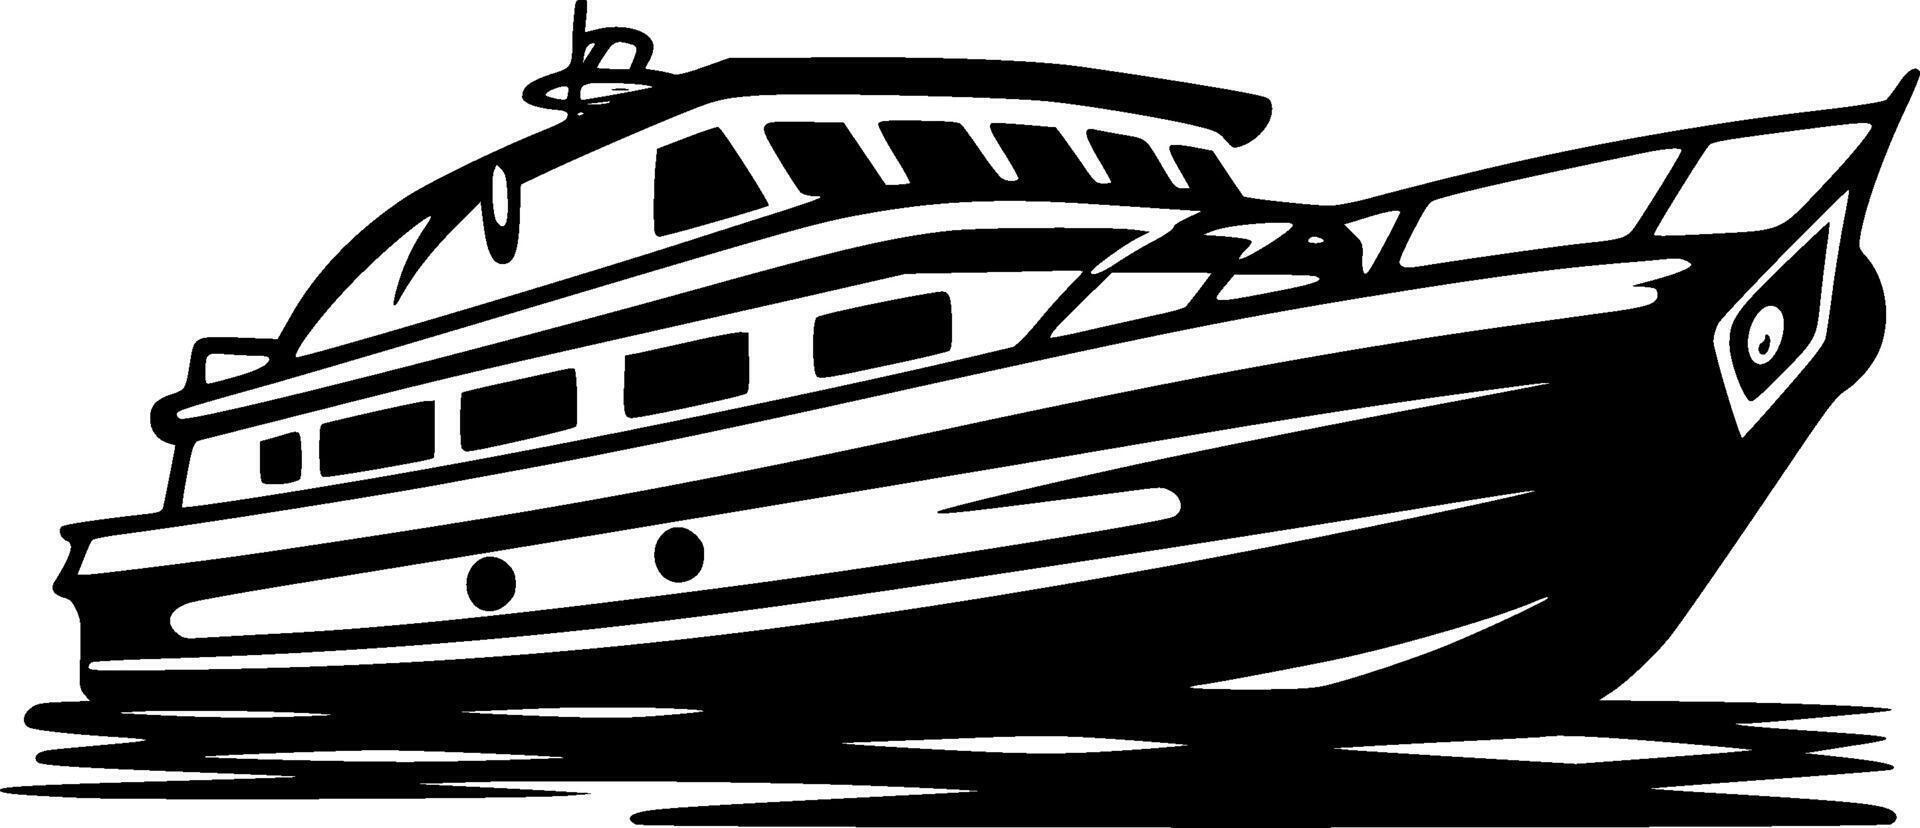 båt, minimalistisk och enkel silhuett - vektor illustration